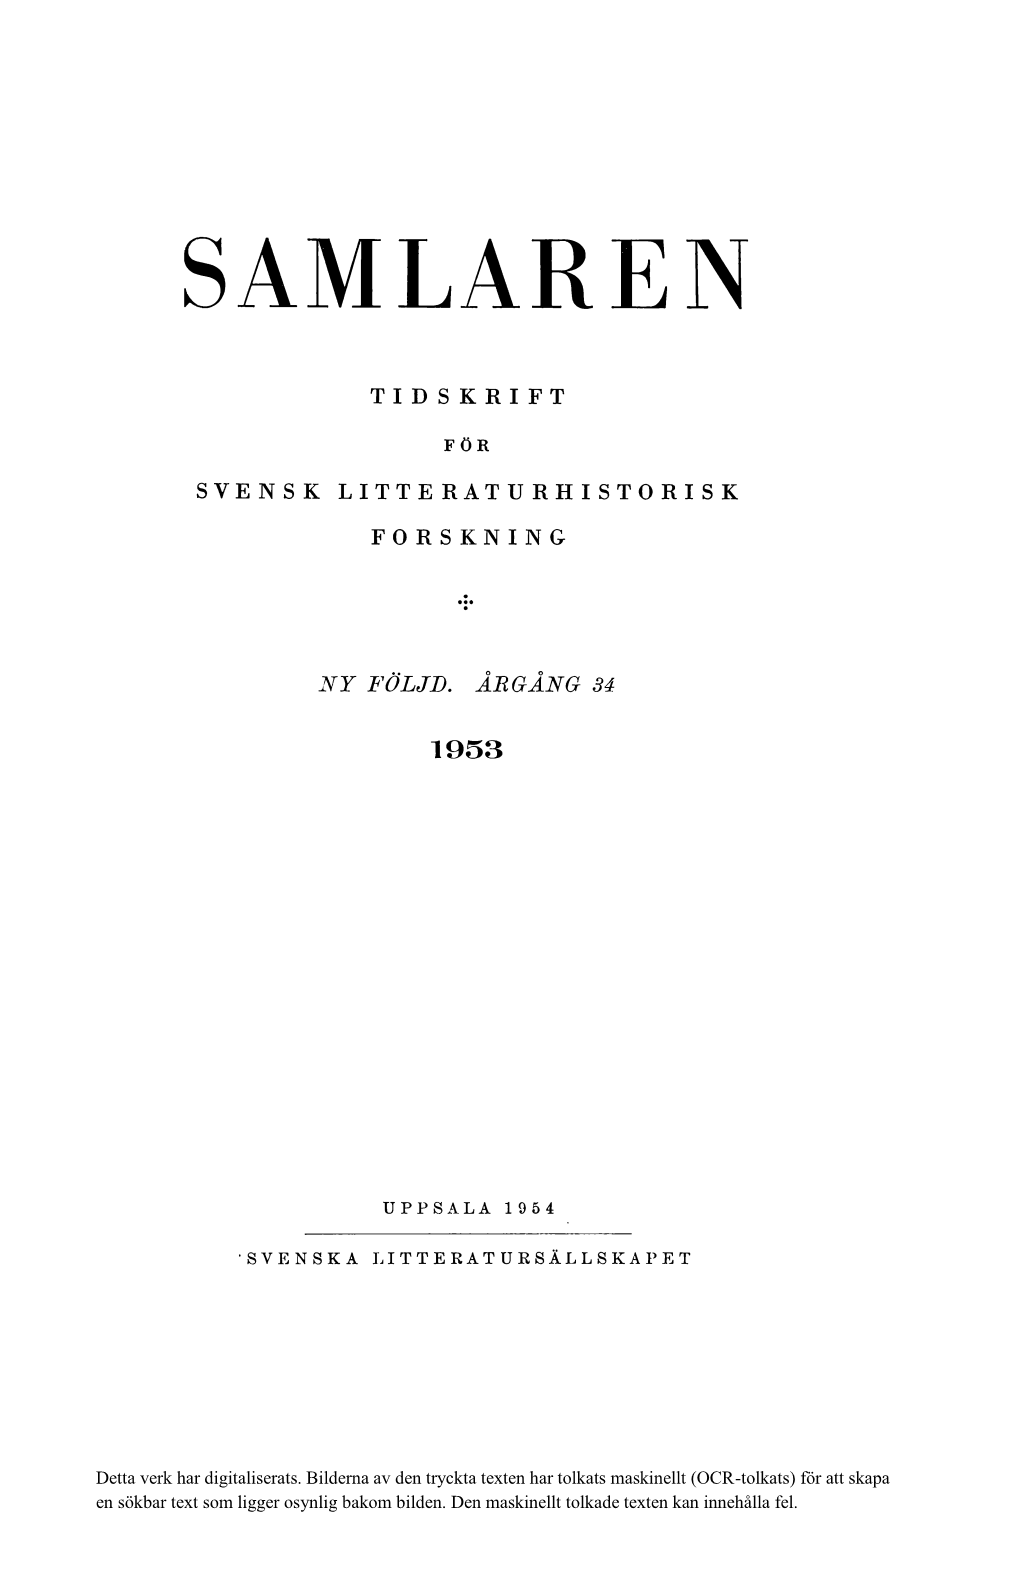 Svensk Litteraturhistorisk Bibliografi 70